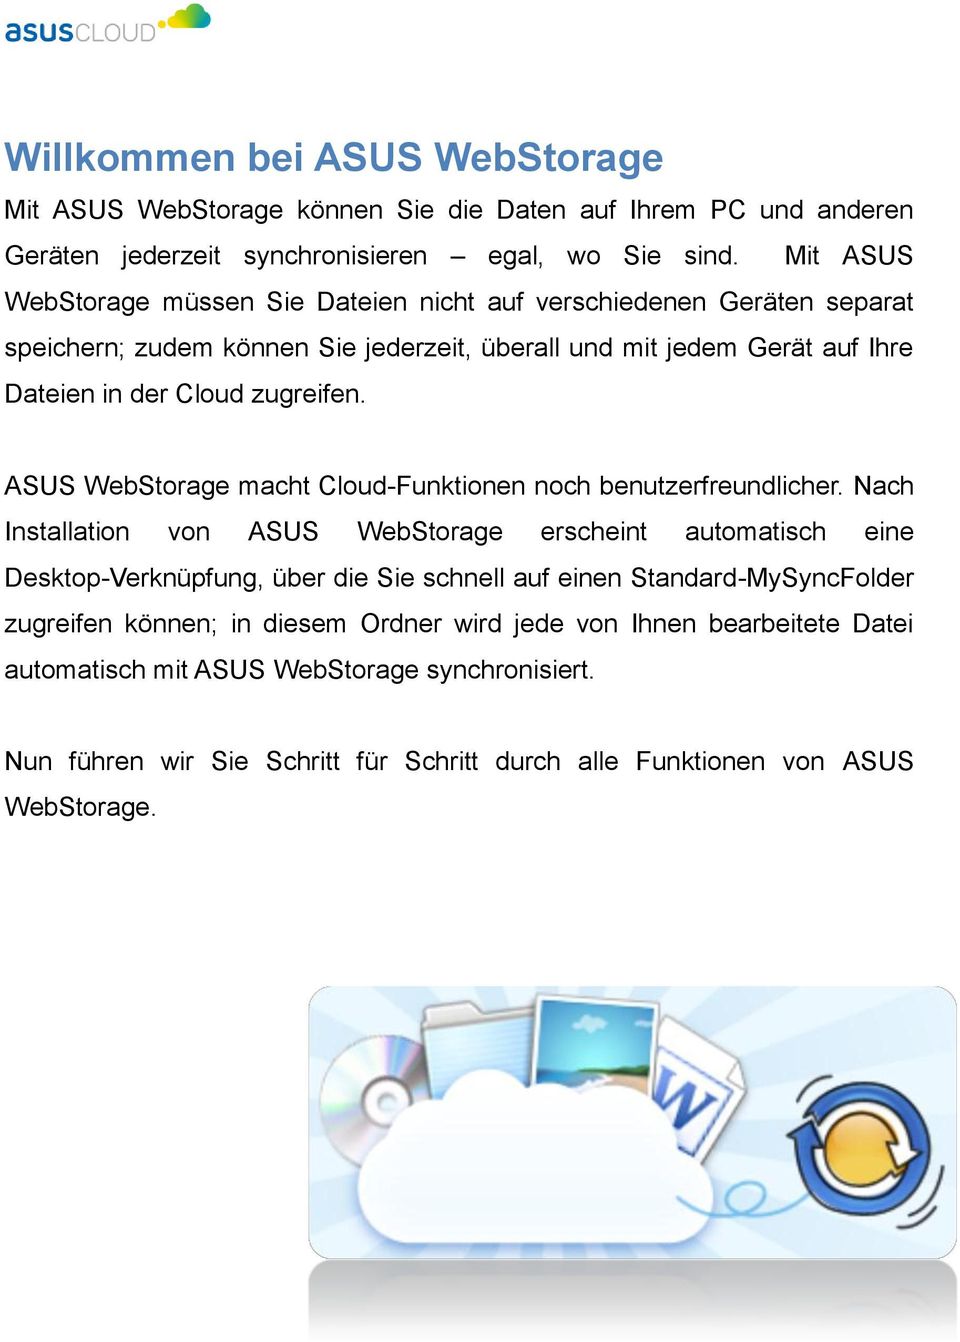 ASUS WebStorage macht Cloud-Funktionen noch benutzerfreundlicher.